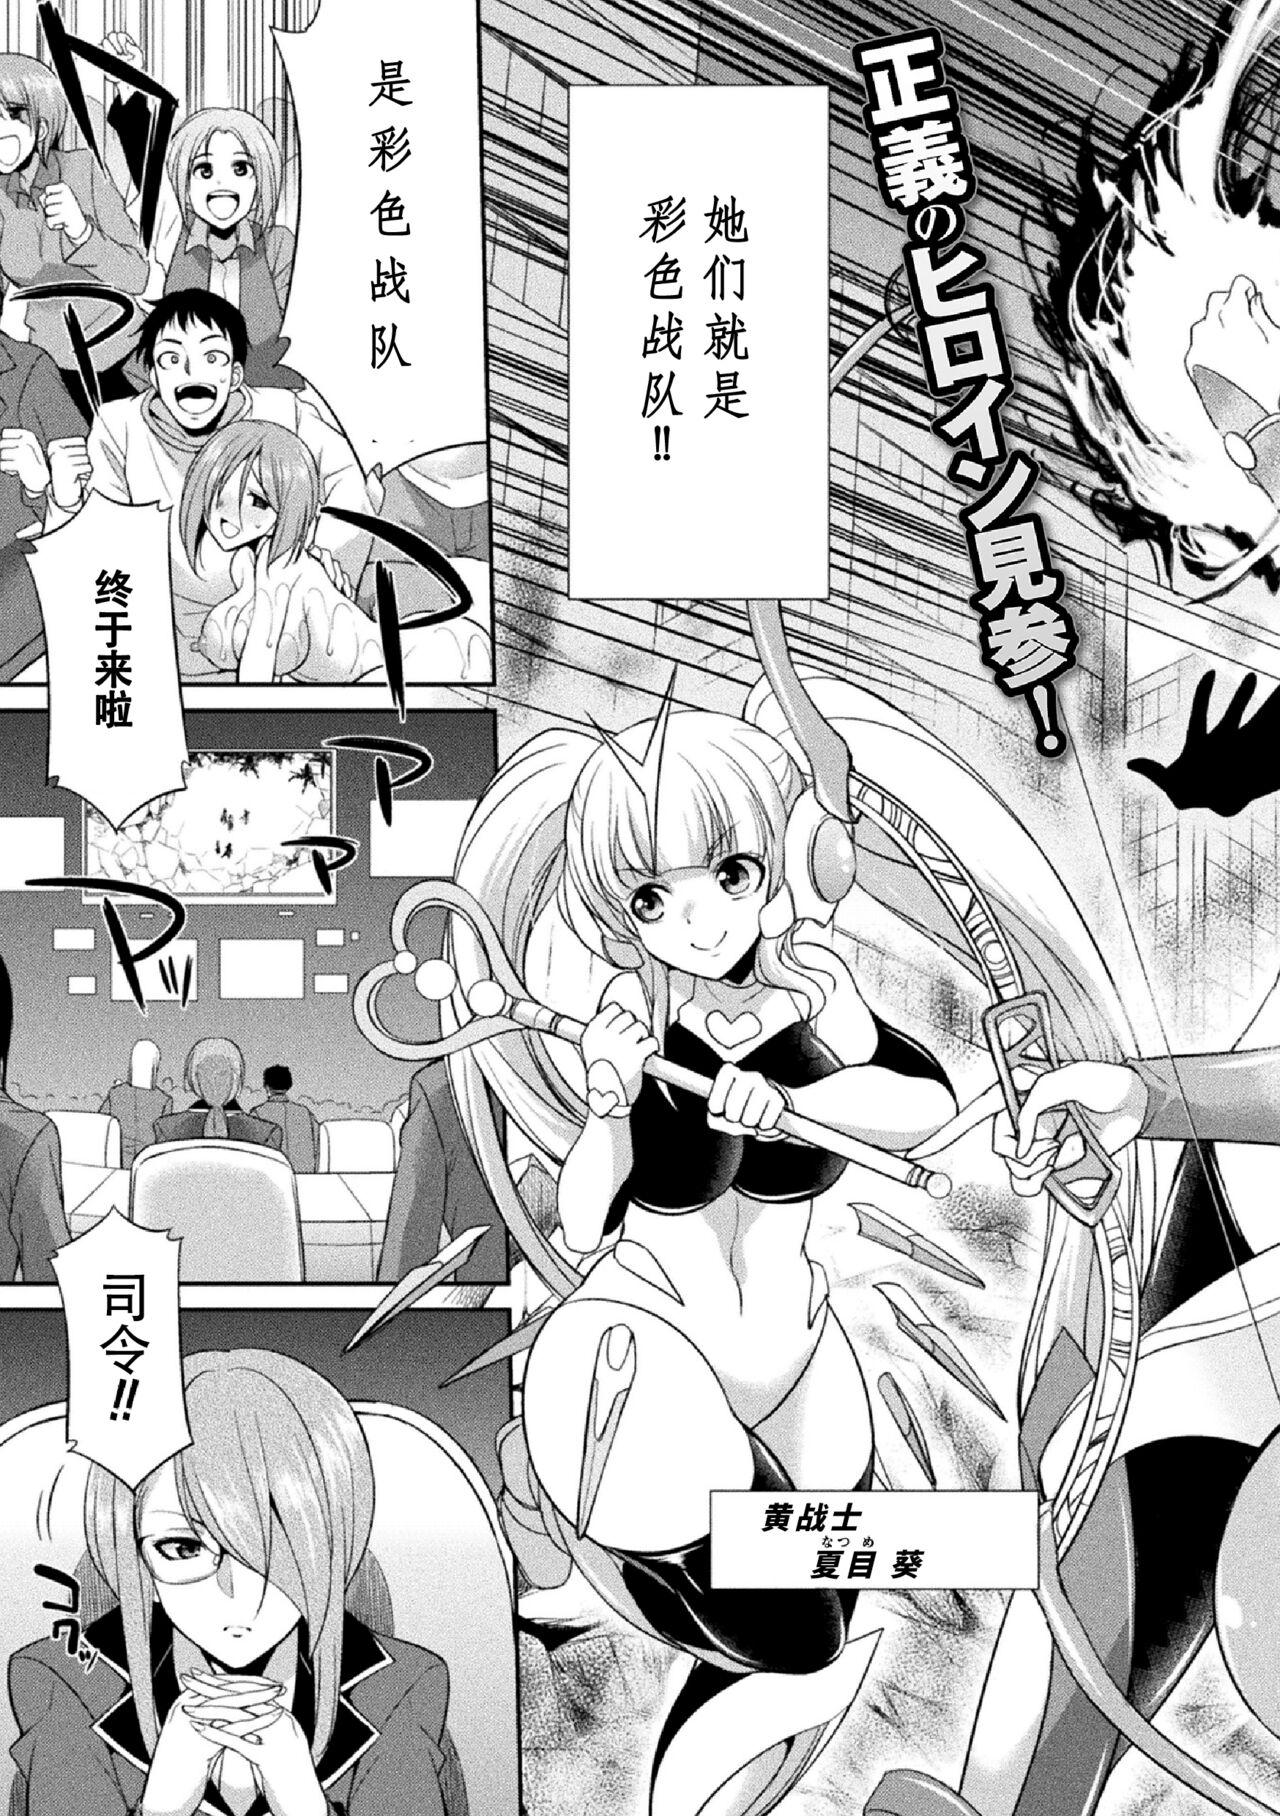 Oralsex Tokumu Sentai Colorful Force Seigi no Heroine vs Shokushu Joou! Futanari Choukyou Daikessen!? Teenporn - Page 7